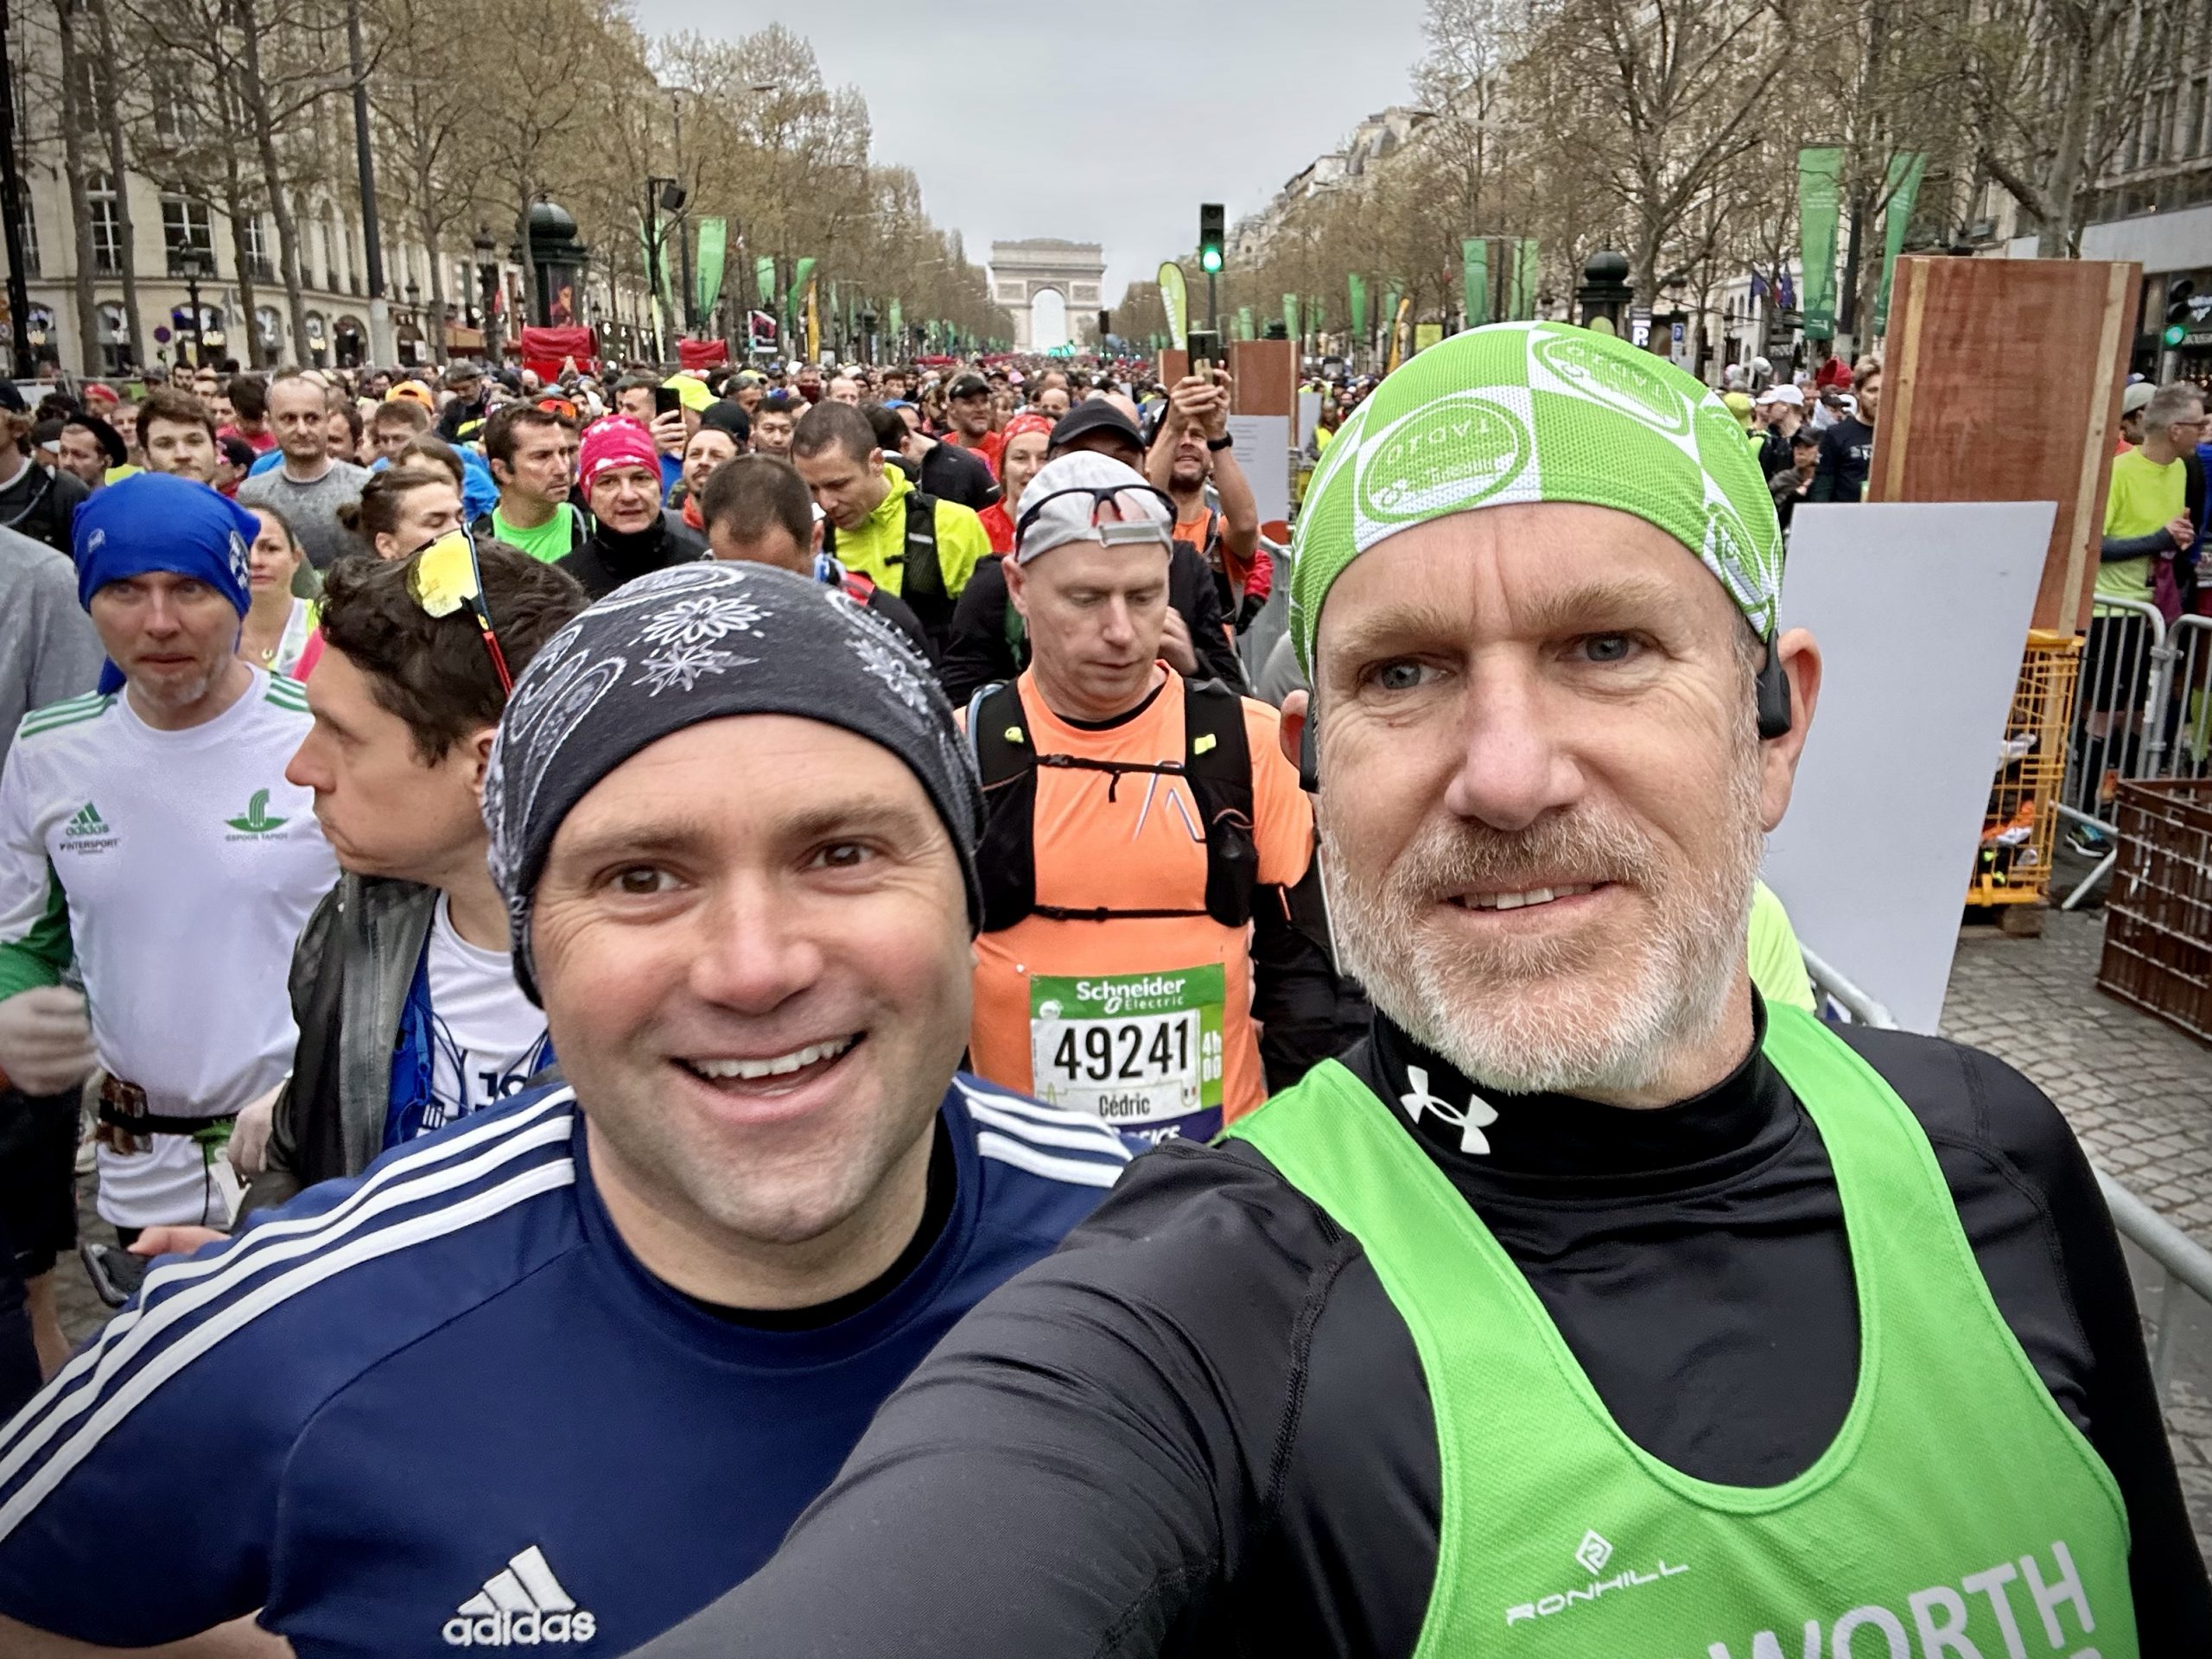 Day 92.4 – Paris marathon